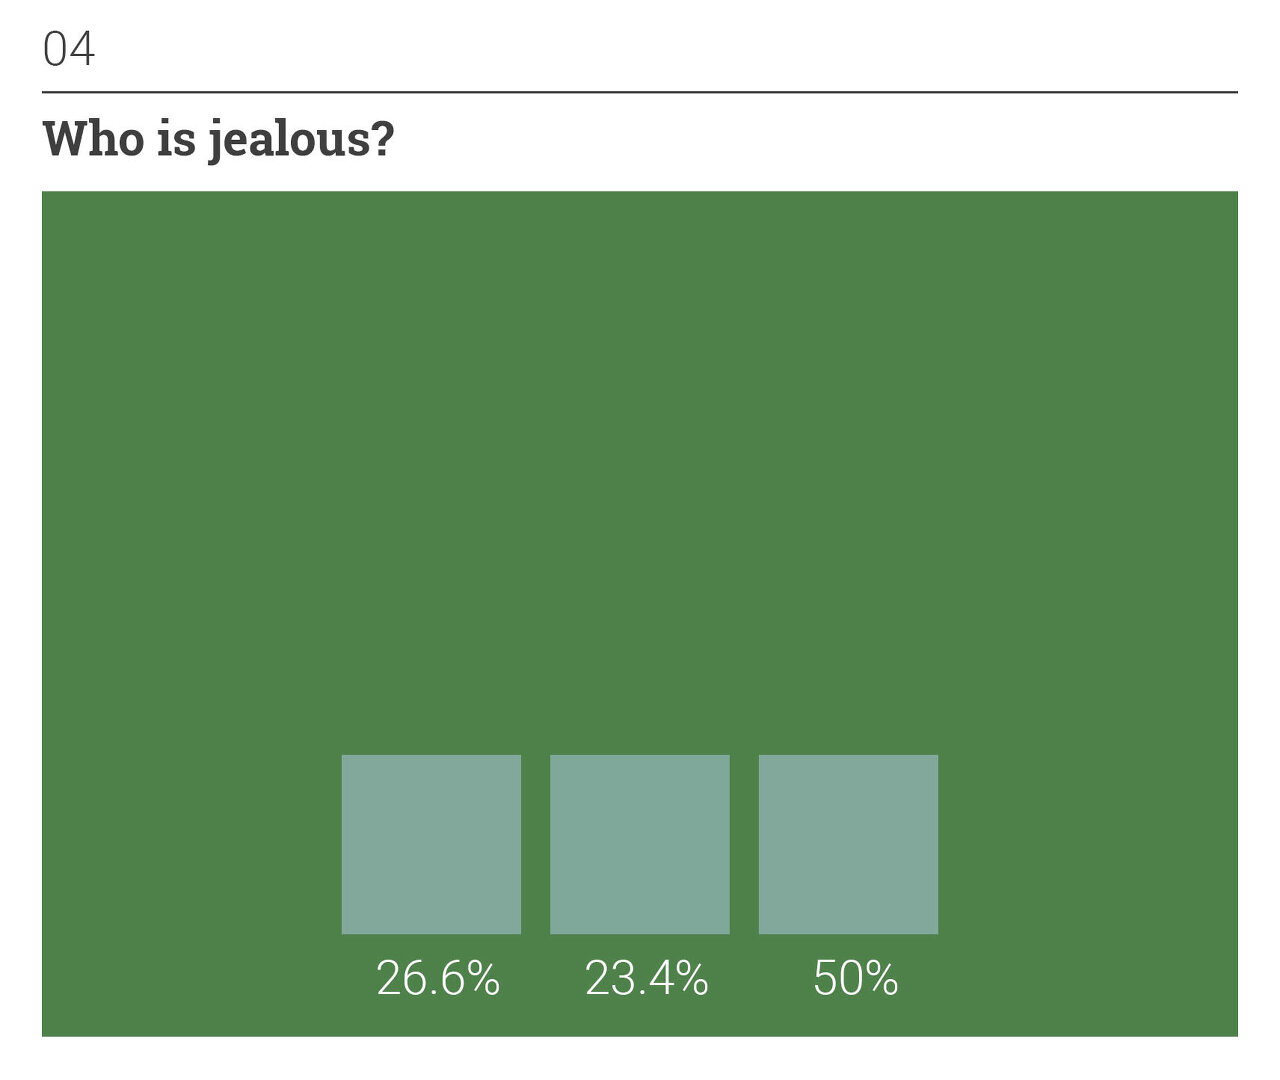 녹색 배경에 민트색 정사각형 세 개가 아래쪽에 가로로 나란히 있다. 왼쪽부터 26.6%, 23.4%, 50%의 응답자가 선택했다.